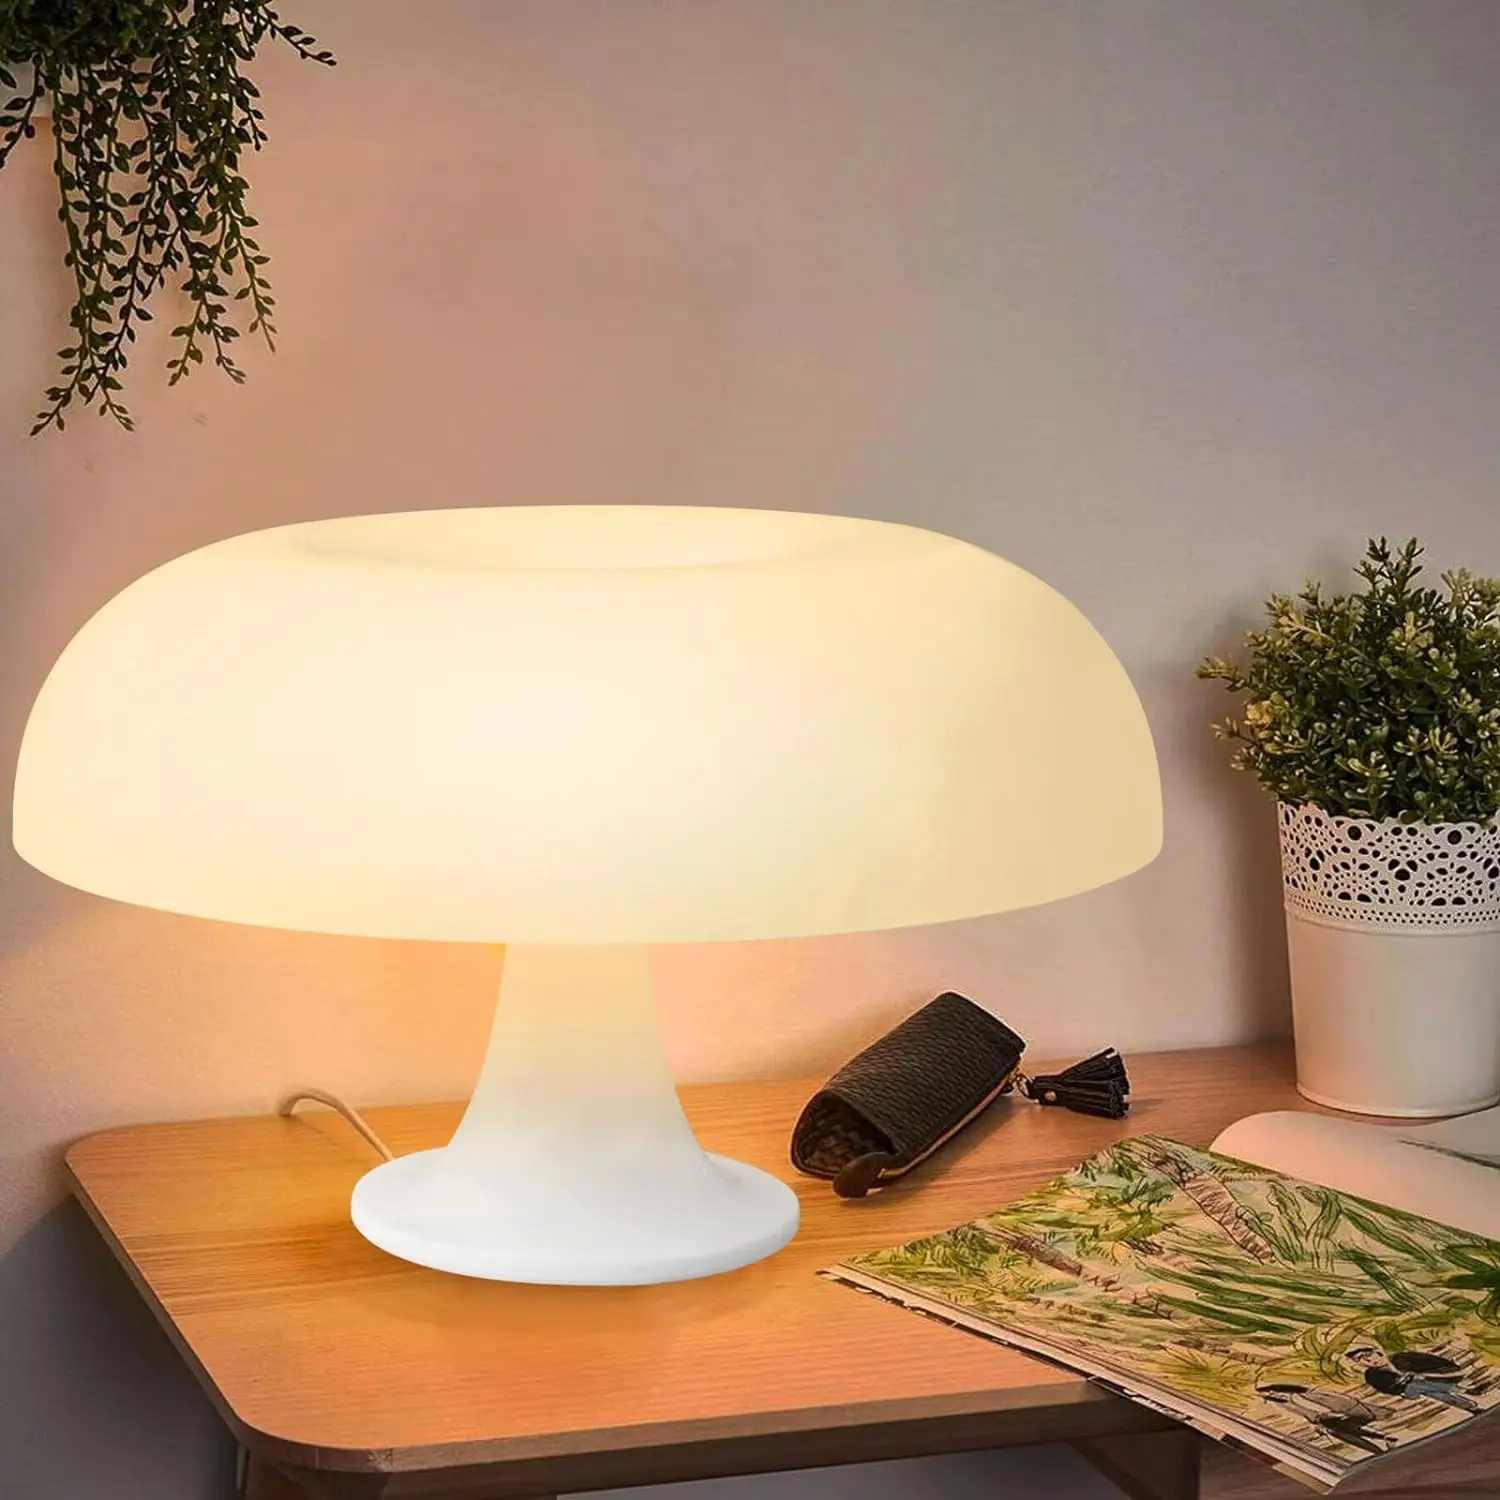 

Italy Designer LED Mushroom Table Lamp for Hotel Bedroom Bedside Living Room Decoration Lighting Modern Minimalist Desk Lights